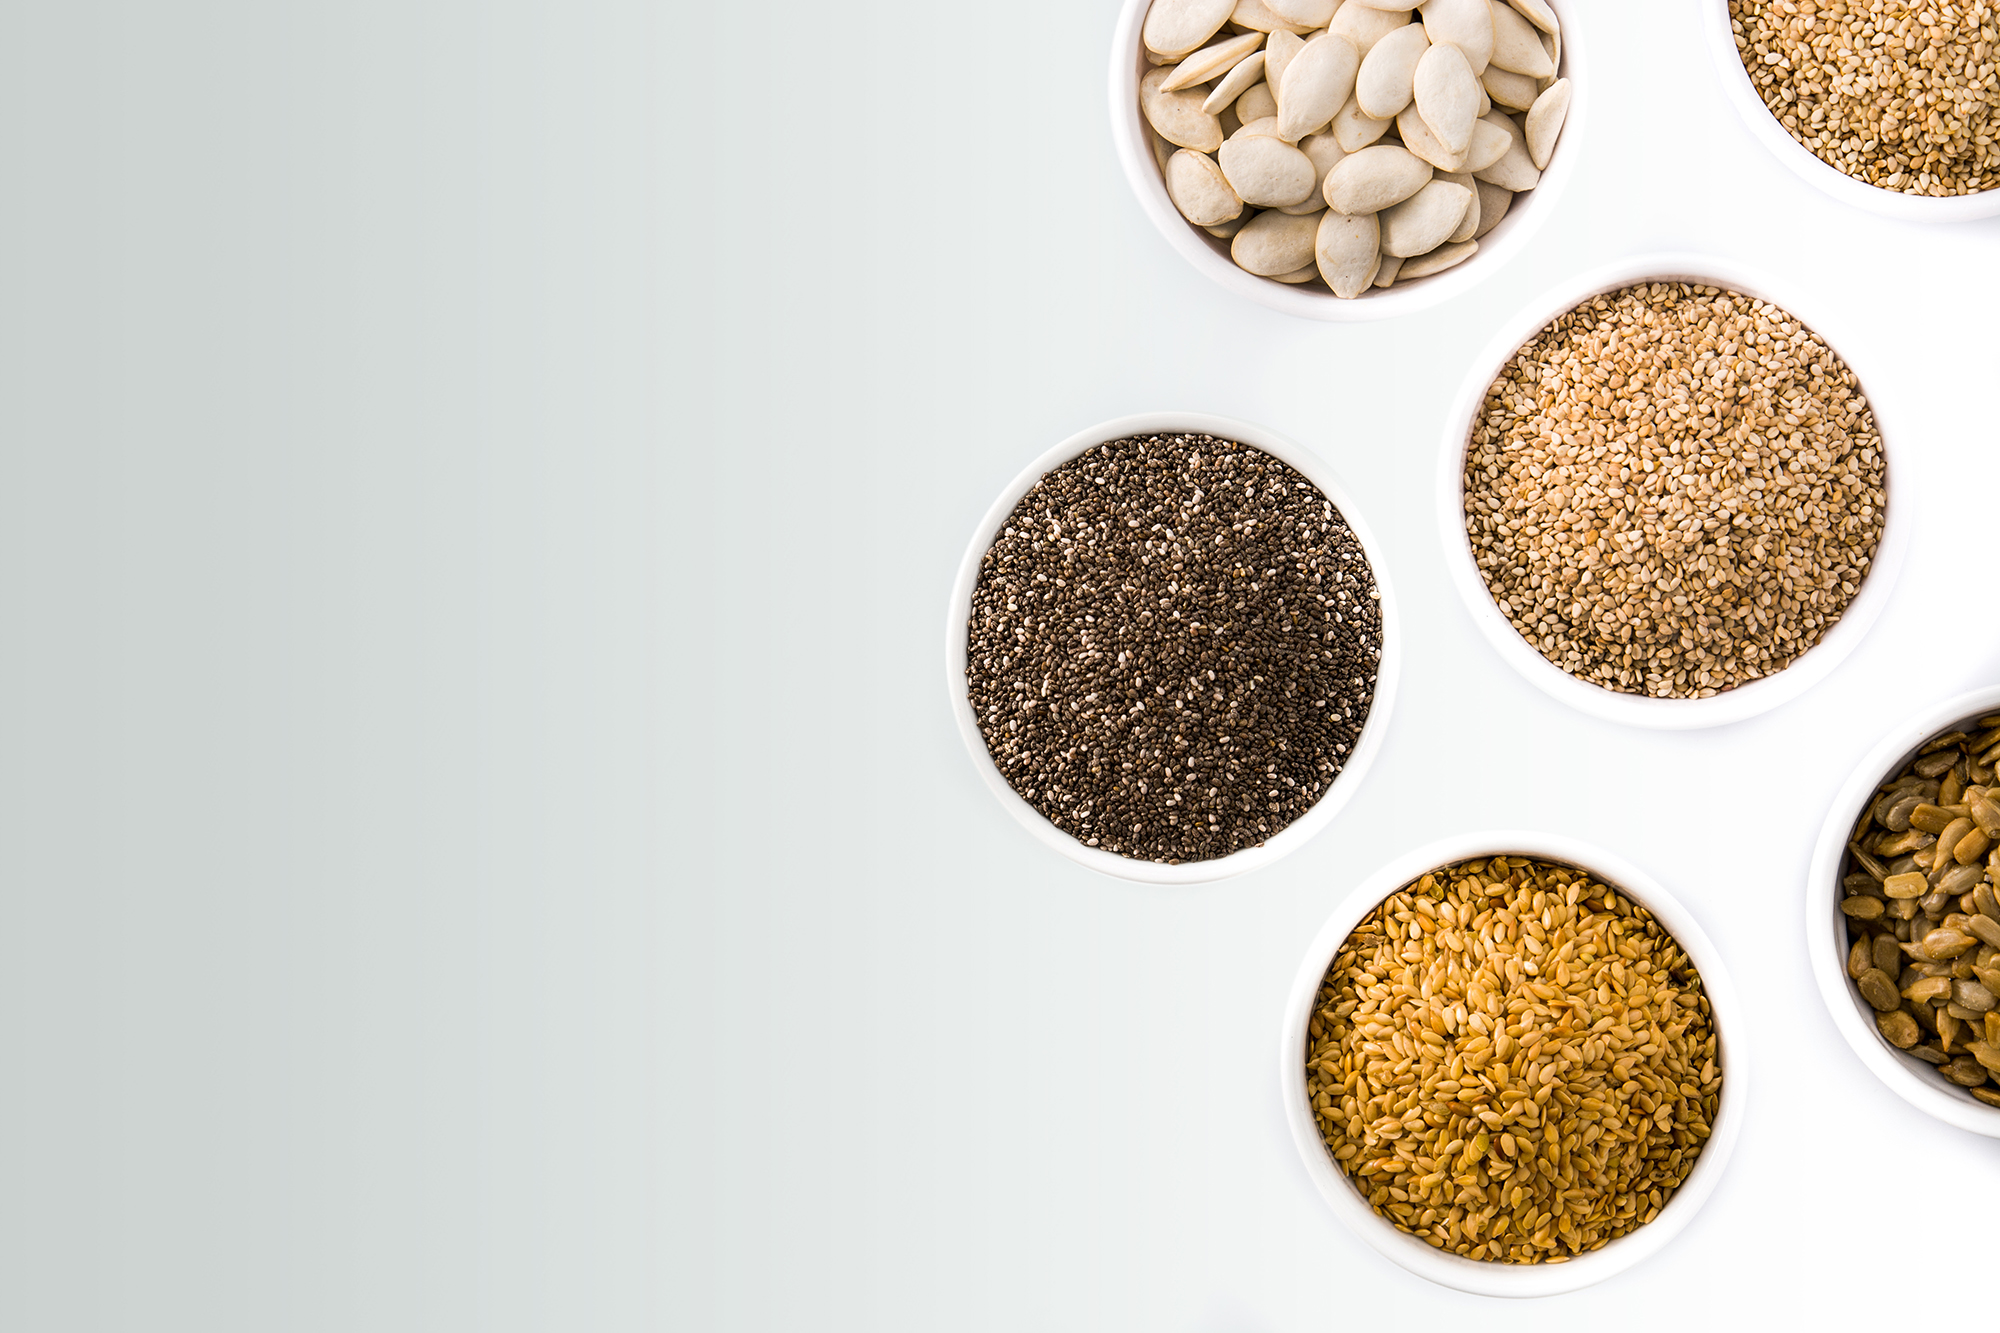 TOMRA Food seeds and grains